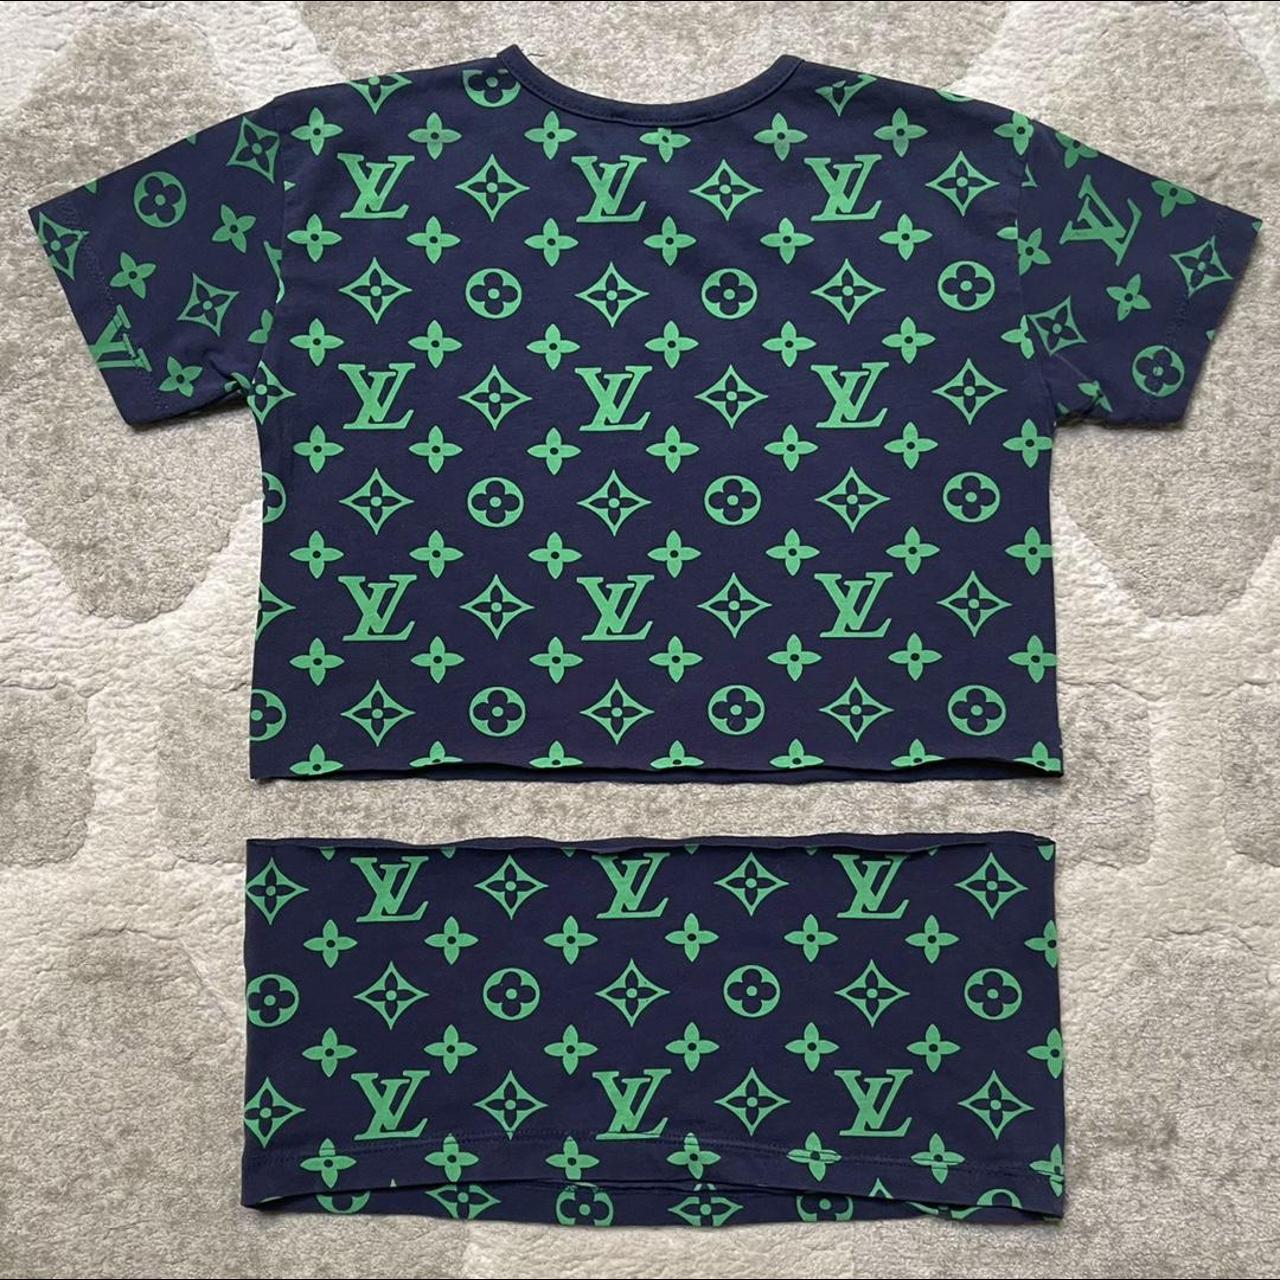 Louis Vuitton signature T-shirt (Extra photos as - Depop